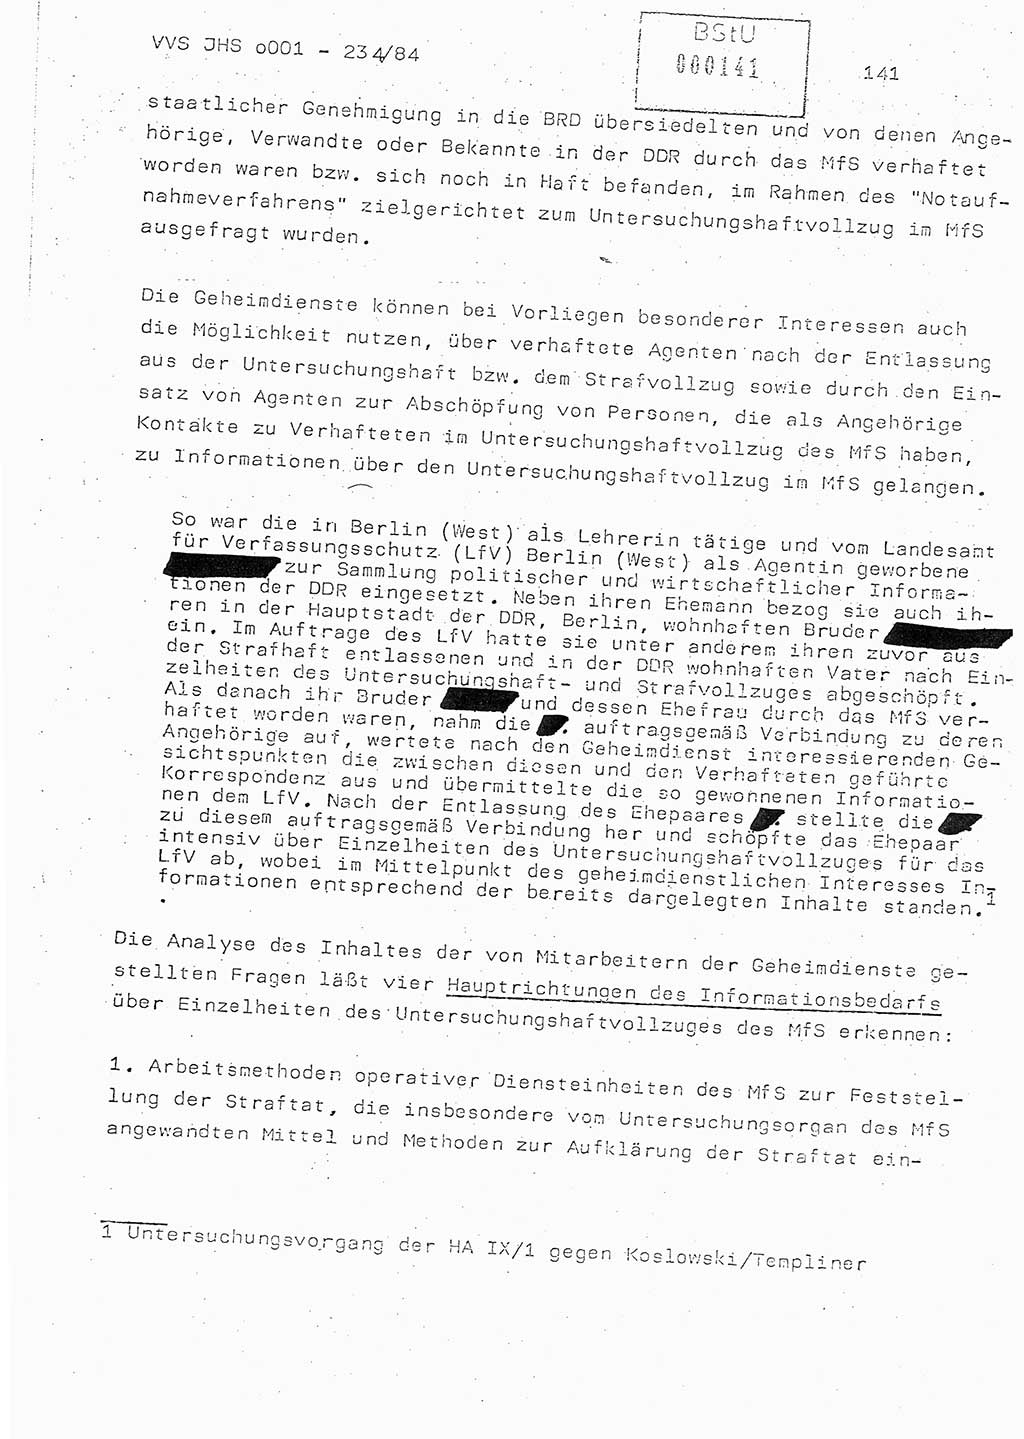 Dissertation Oberst Siegfried Rataizick (Abt. ⅩⅣ), Oberstleutnant Volkmar Heinz (Abt. ⅩⅣ), Oberstleutnant Werner Stein (HA Ⅸ), Hauptmann Heinz Conrad (JHS), Ministerium für Staatssicherheit (MfS) [Deutsche Demokratische Republik (DDR)], Juristische Hochschule (JHS), Vertrauliche Verschlußsache (VVS) o001-234/84, Potsdam 1984, Seite 141 (Diss. MfS DDR JHS VVS o001-234/84 1984, S. 141)